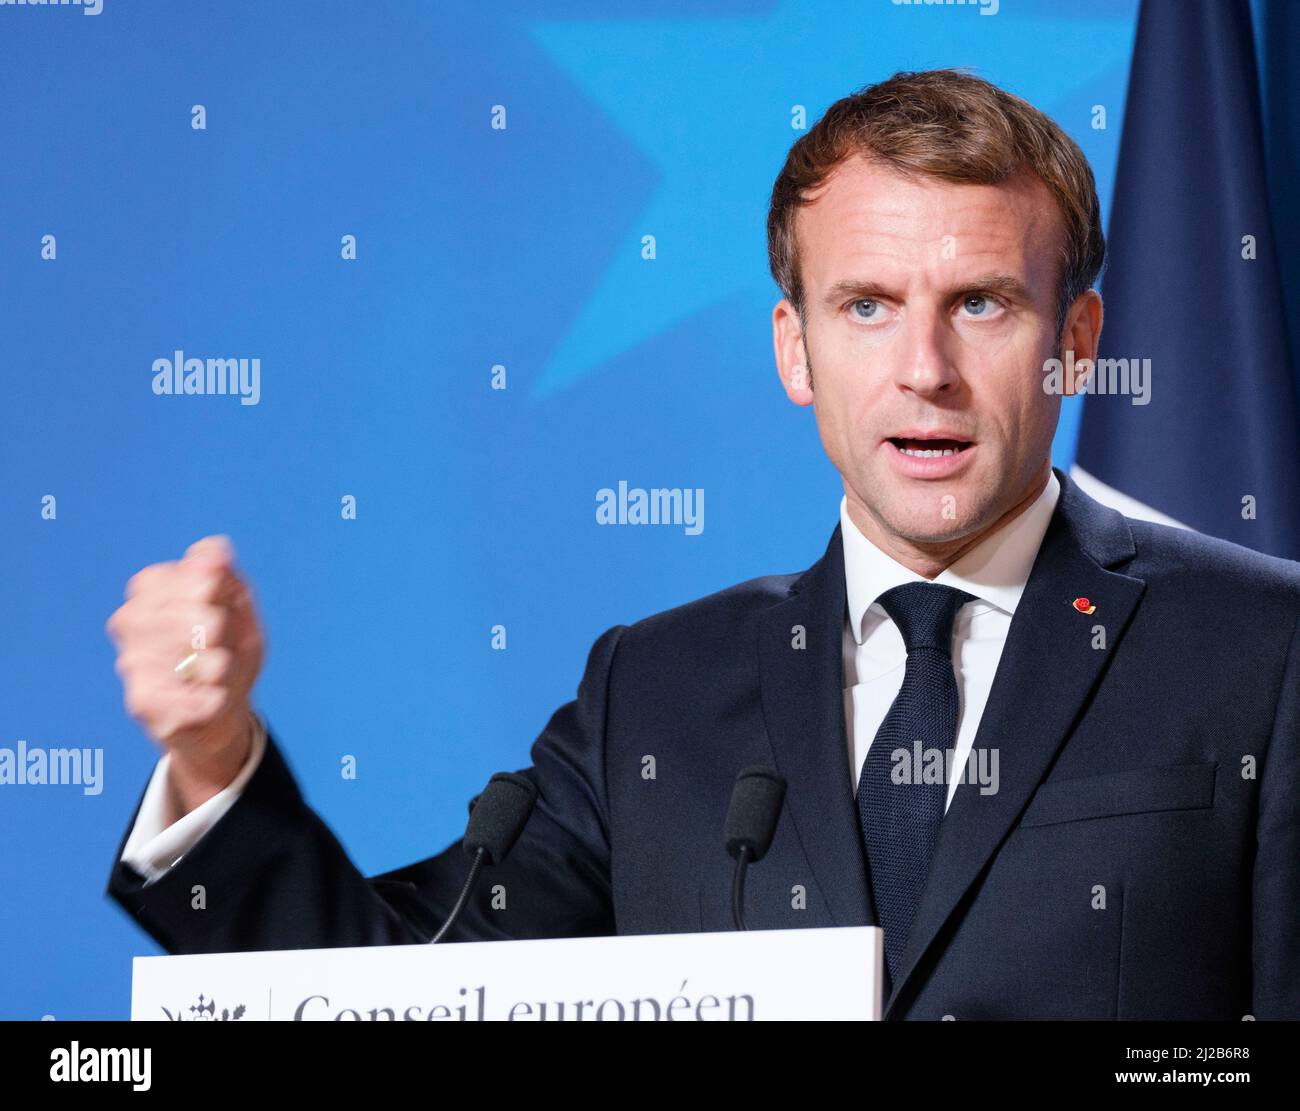 Bélgica, Bruselas, 22 de octubre de 2021: El Presidente de la República Francesa Emmanuel Macron asistió a una conferencia de prensa para la reunión del Consejo Europeo. E Foto de stock